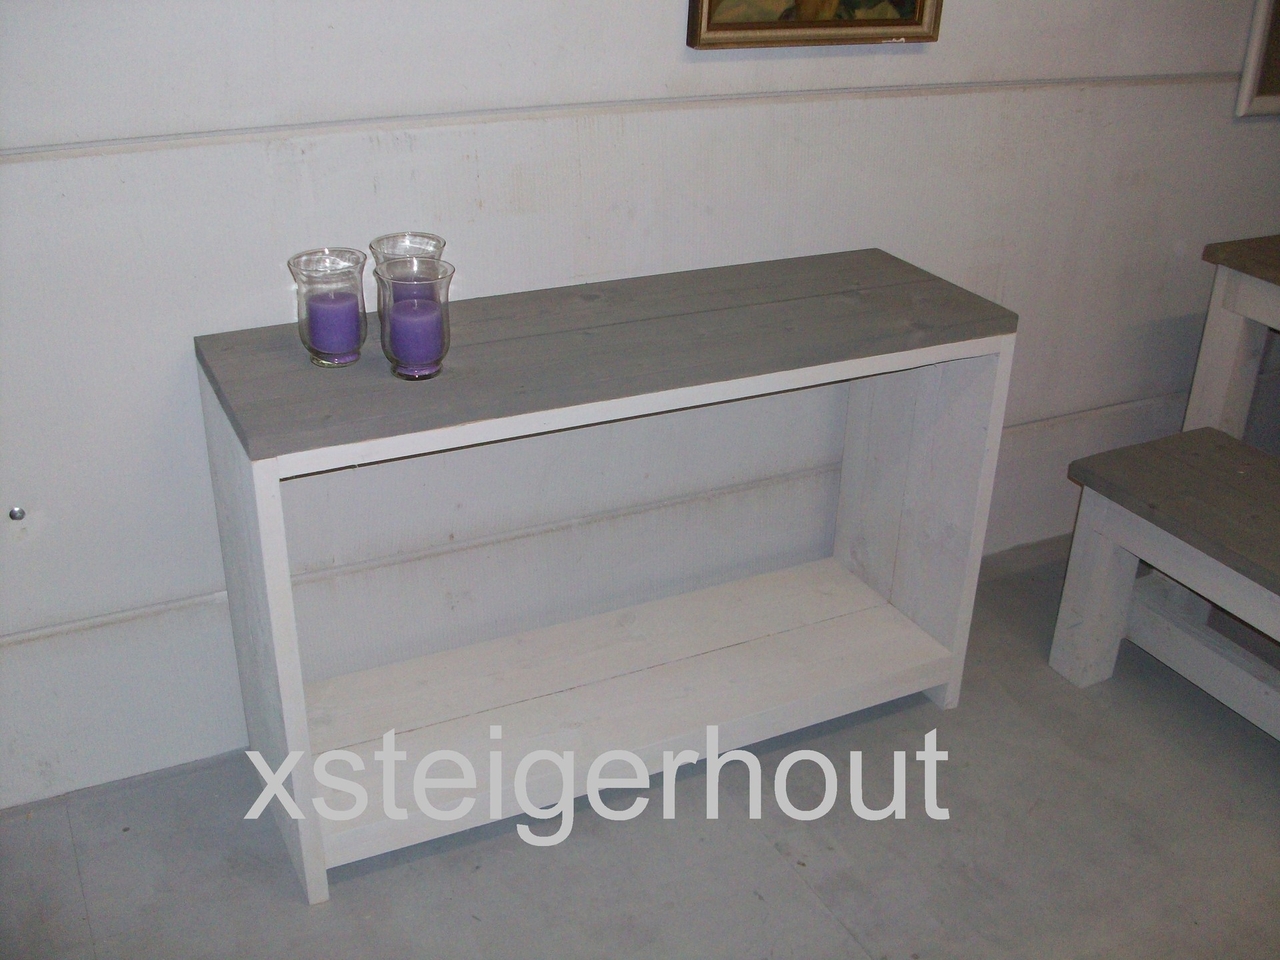 In Sinewi reflecteren Smalle steigerhout side table bouwpakket - xsteigerhout